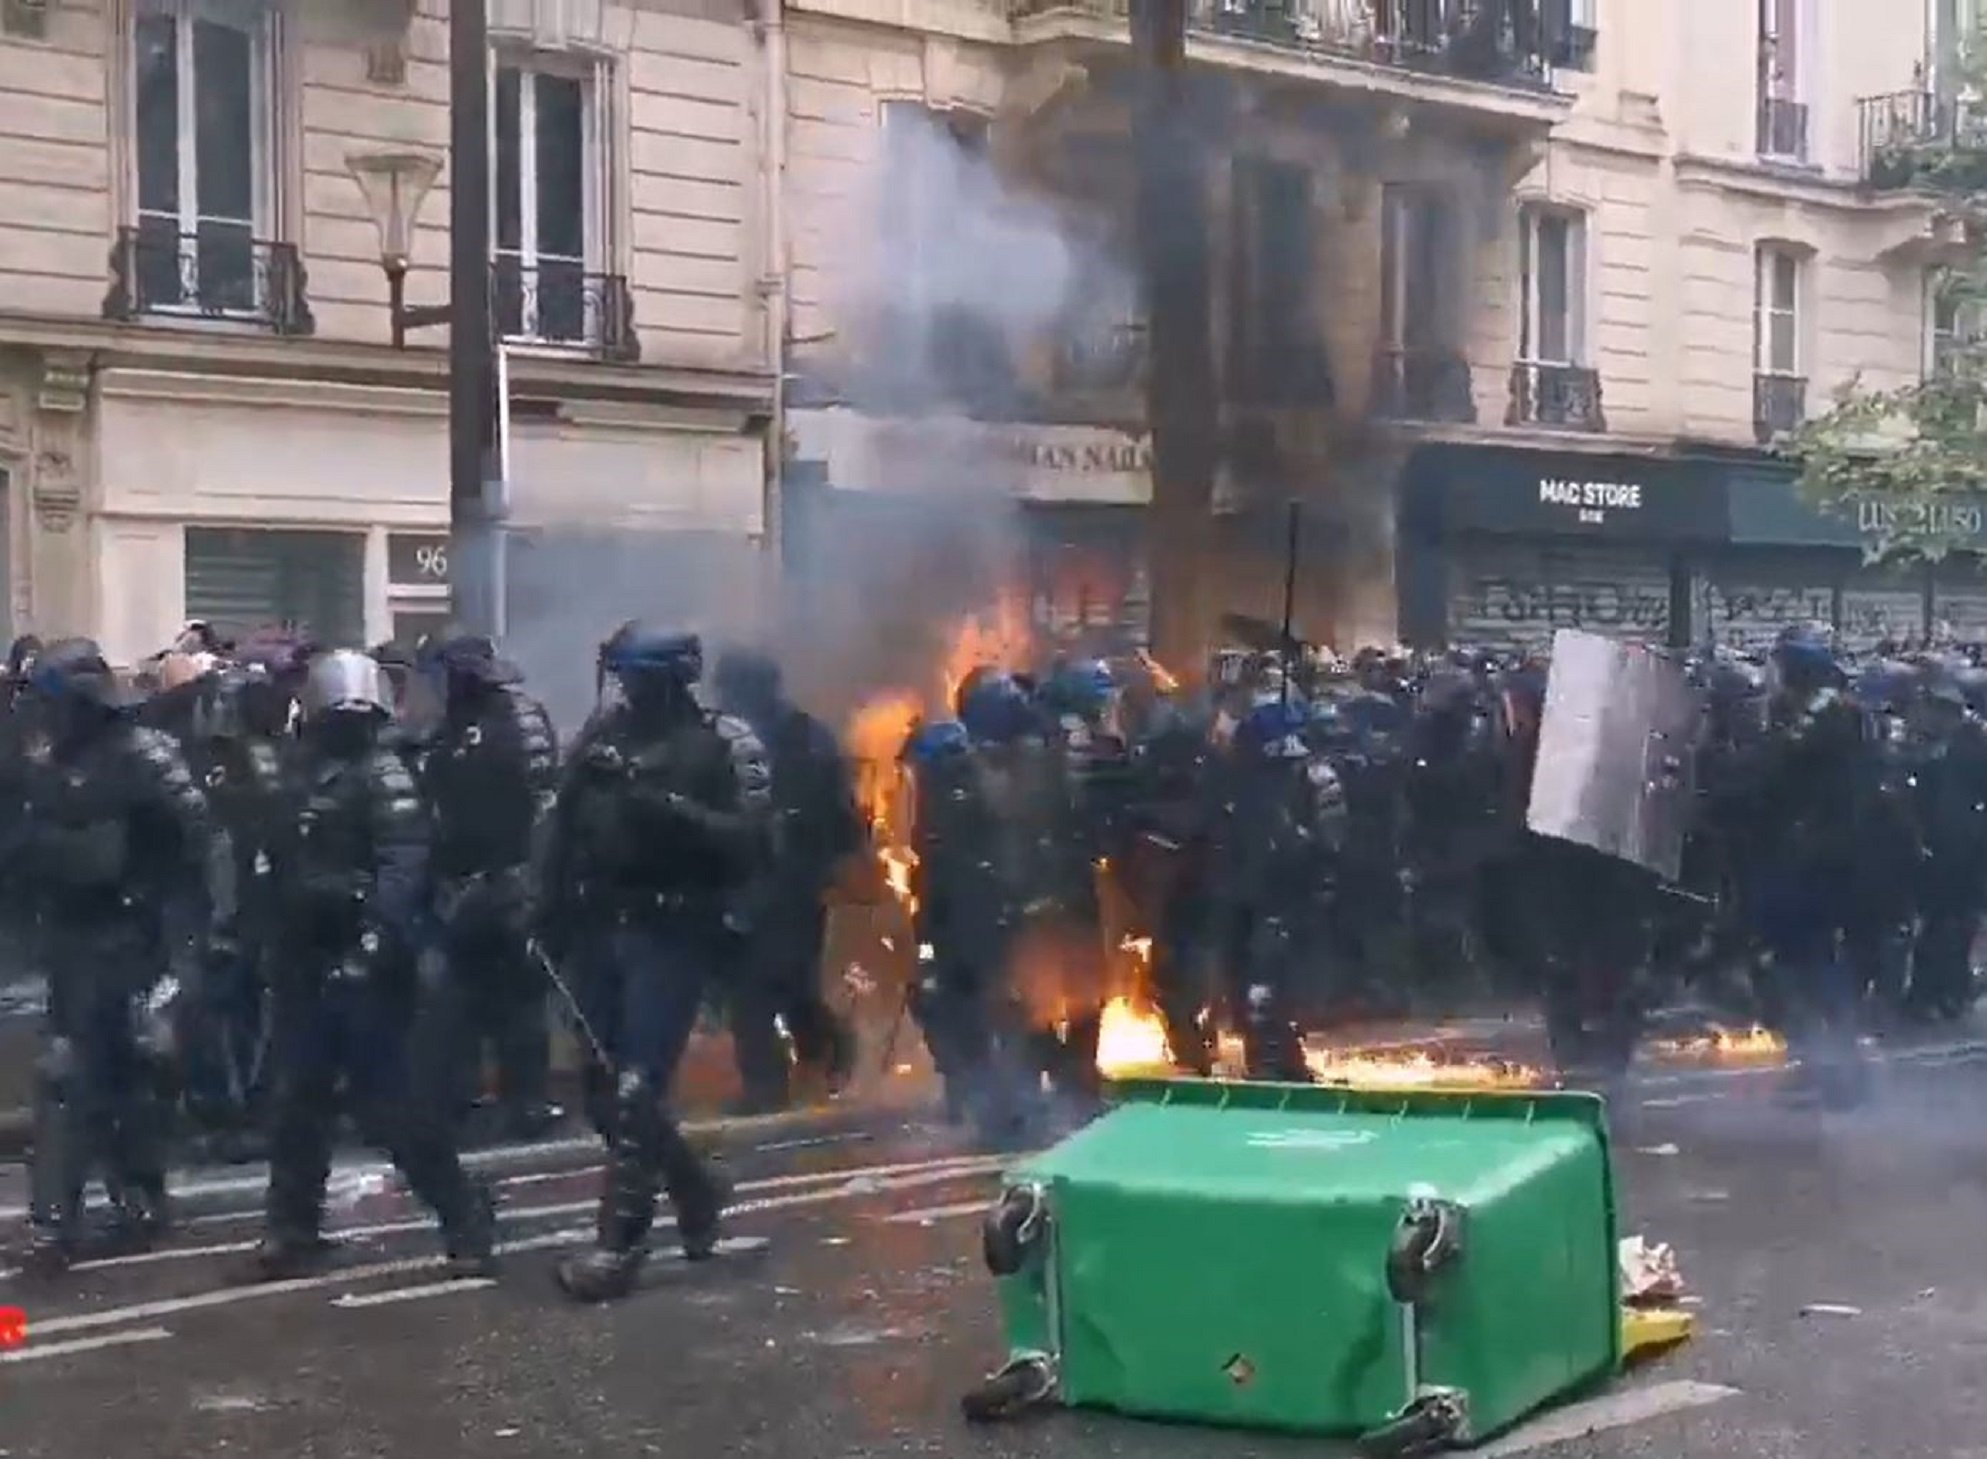 Incidentes muy violentos en París protagonizados por los Black Blocs | VÍDEO